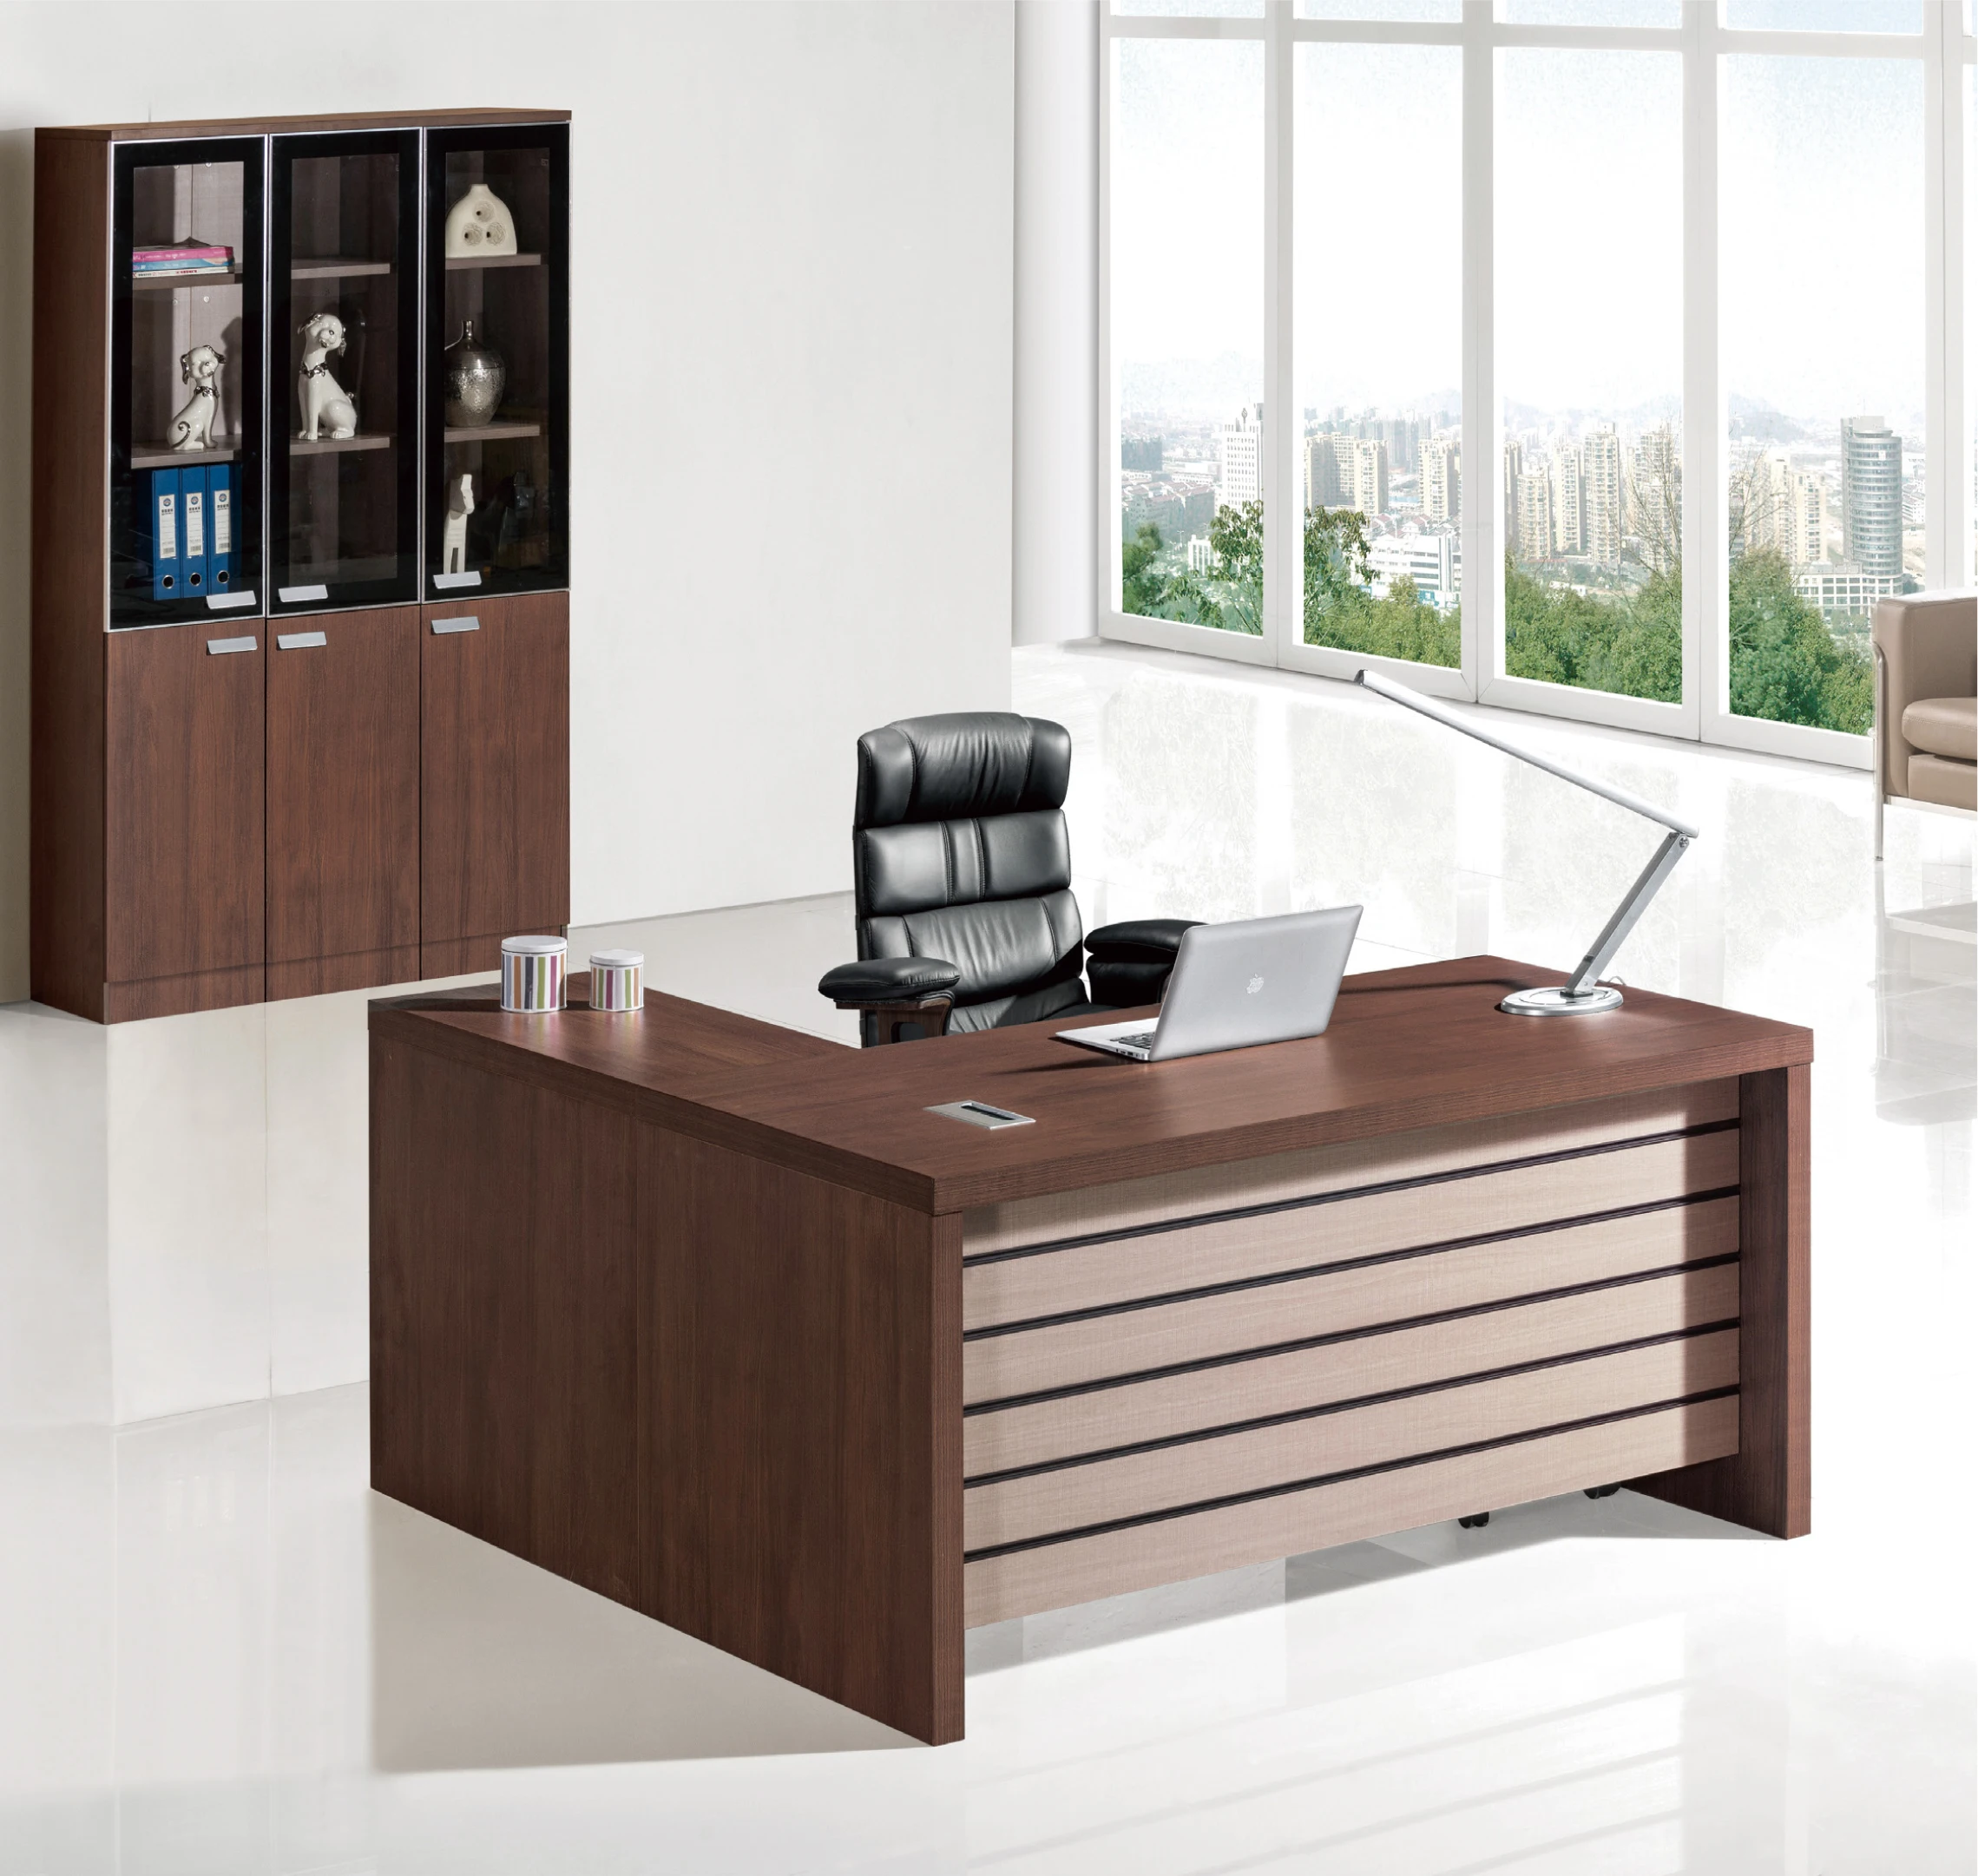 2021 manufacture hot sale office desks for desk home office office desk furniture (1600214507453)